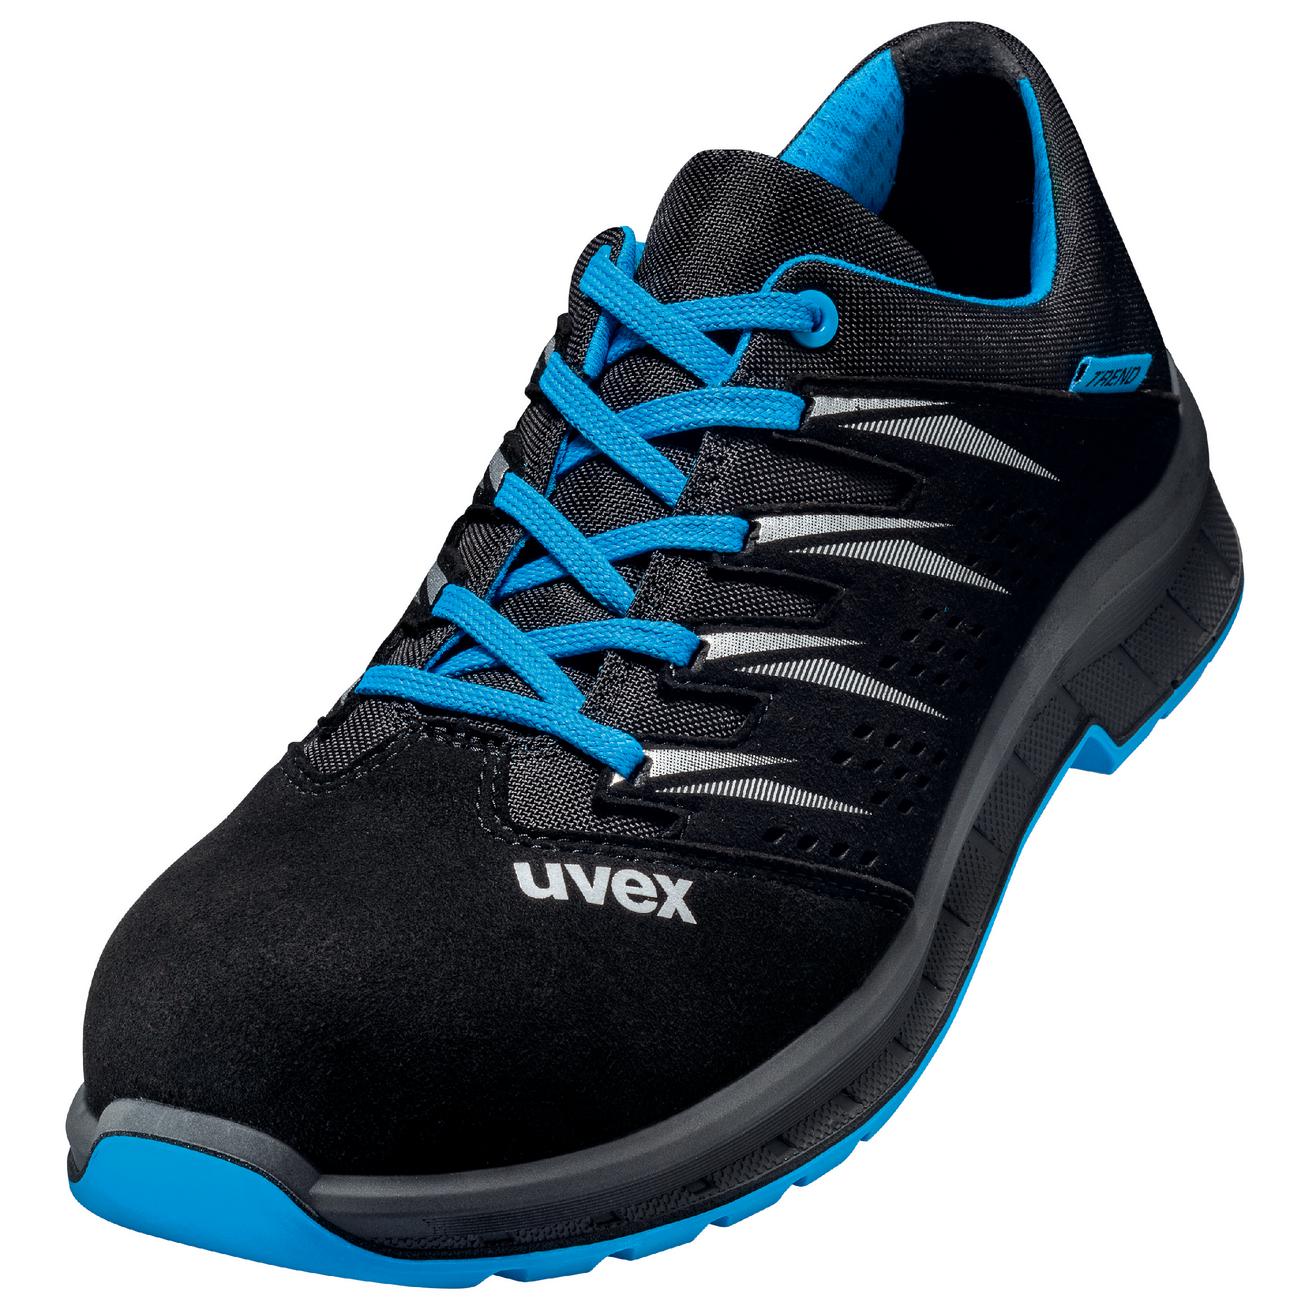 Perf. polobotka obuv uvex 2 trend, šíře 11, S1 SRC, černá/modrá 6937 Velikost: 48, Kód produktu: 6937848